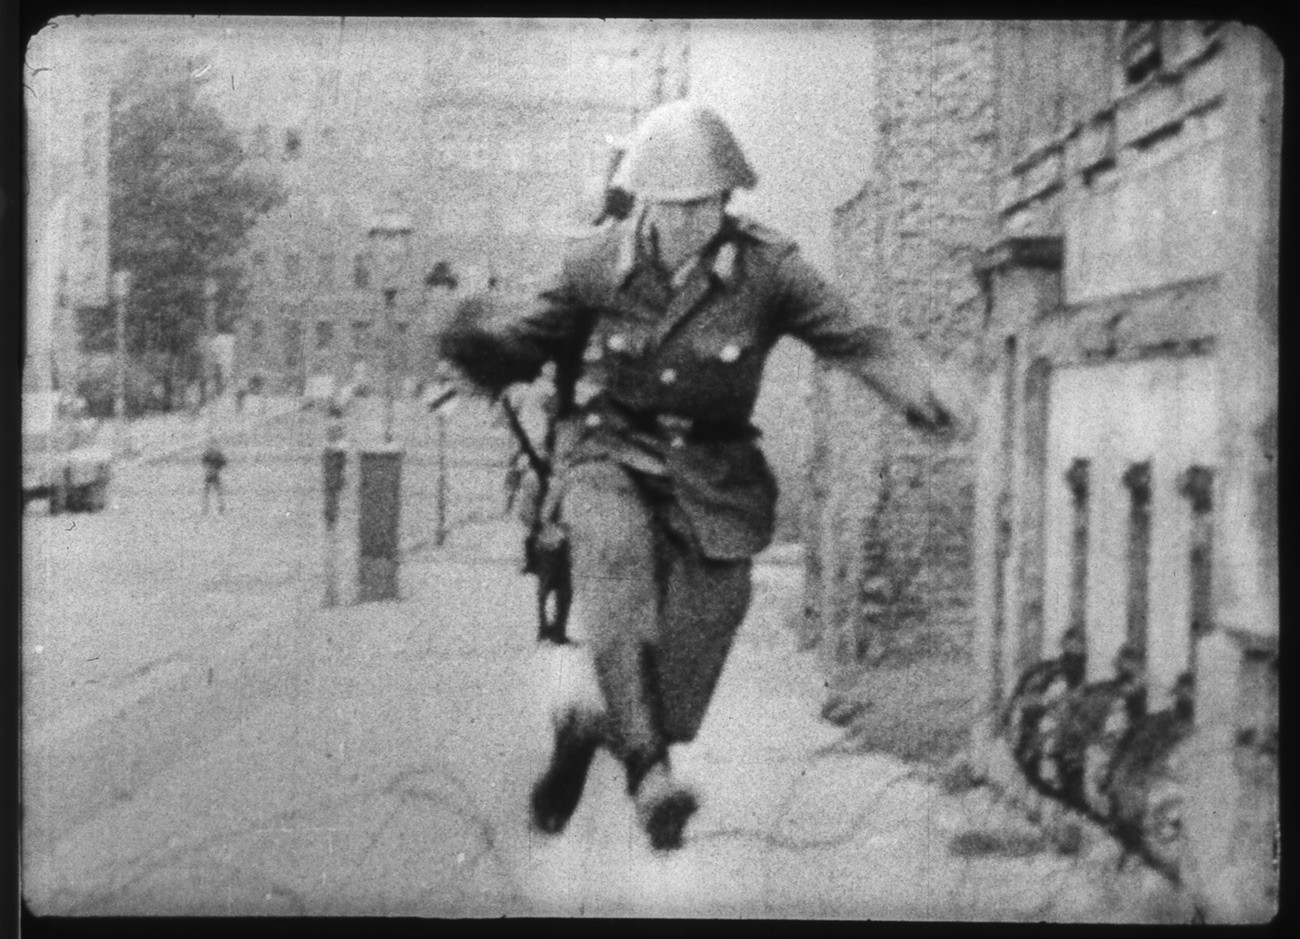 Источнонемачки полицајац Конрад Шуман прескаче бодљикаву жицу.